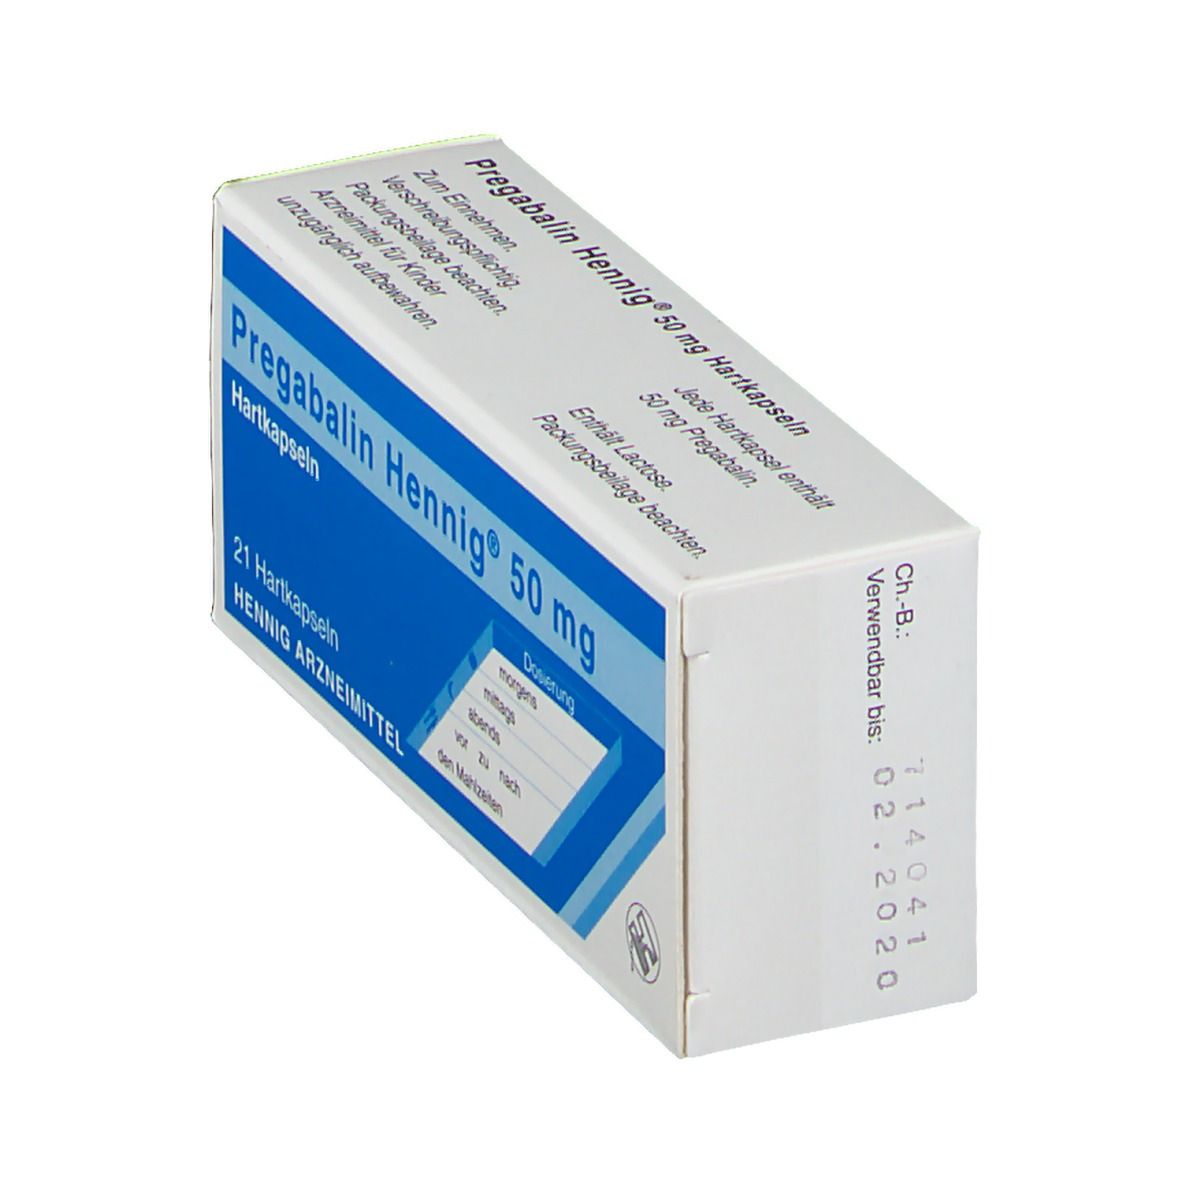 Pregabalin Hennig® 50 mg